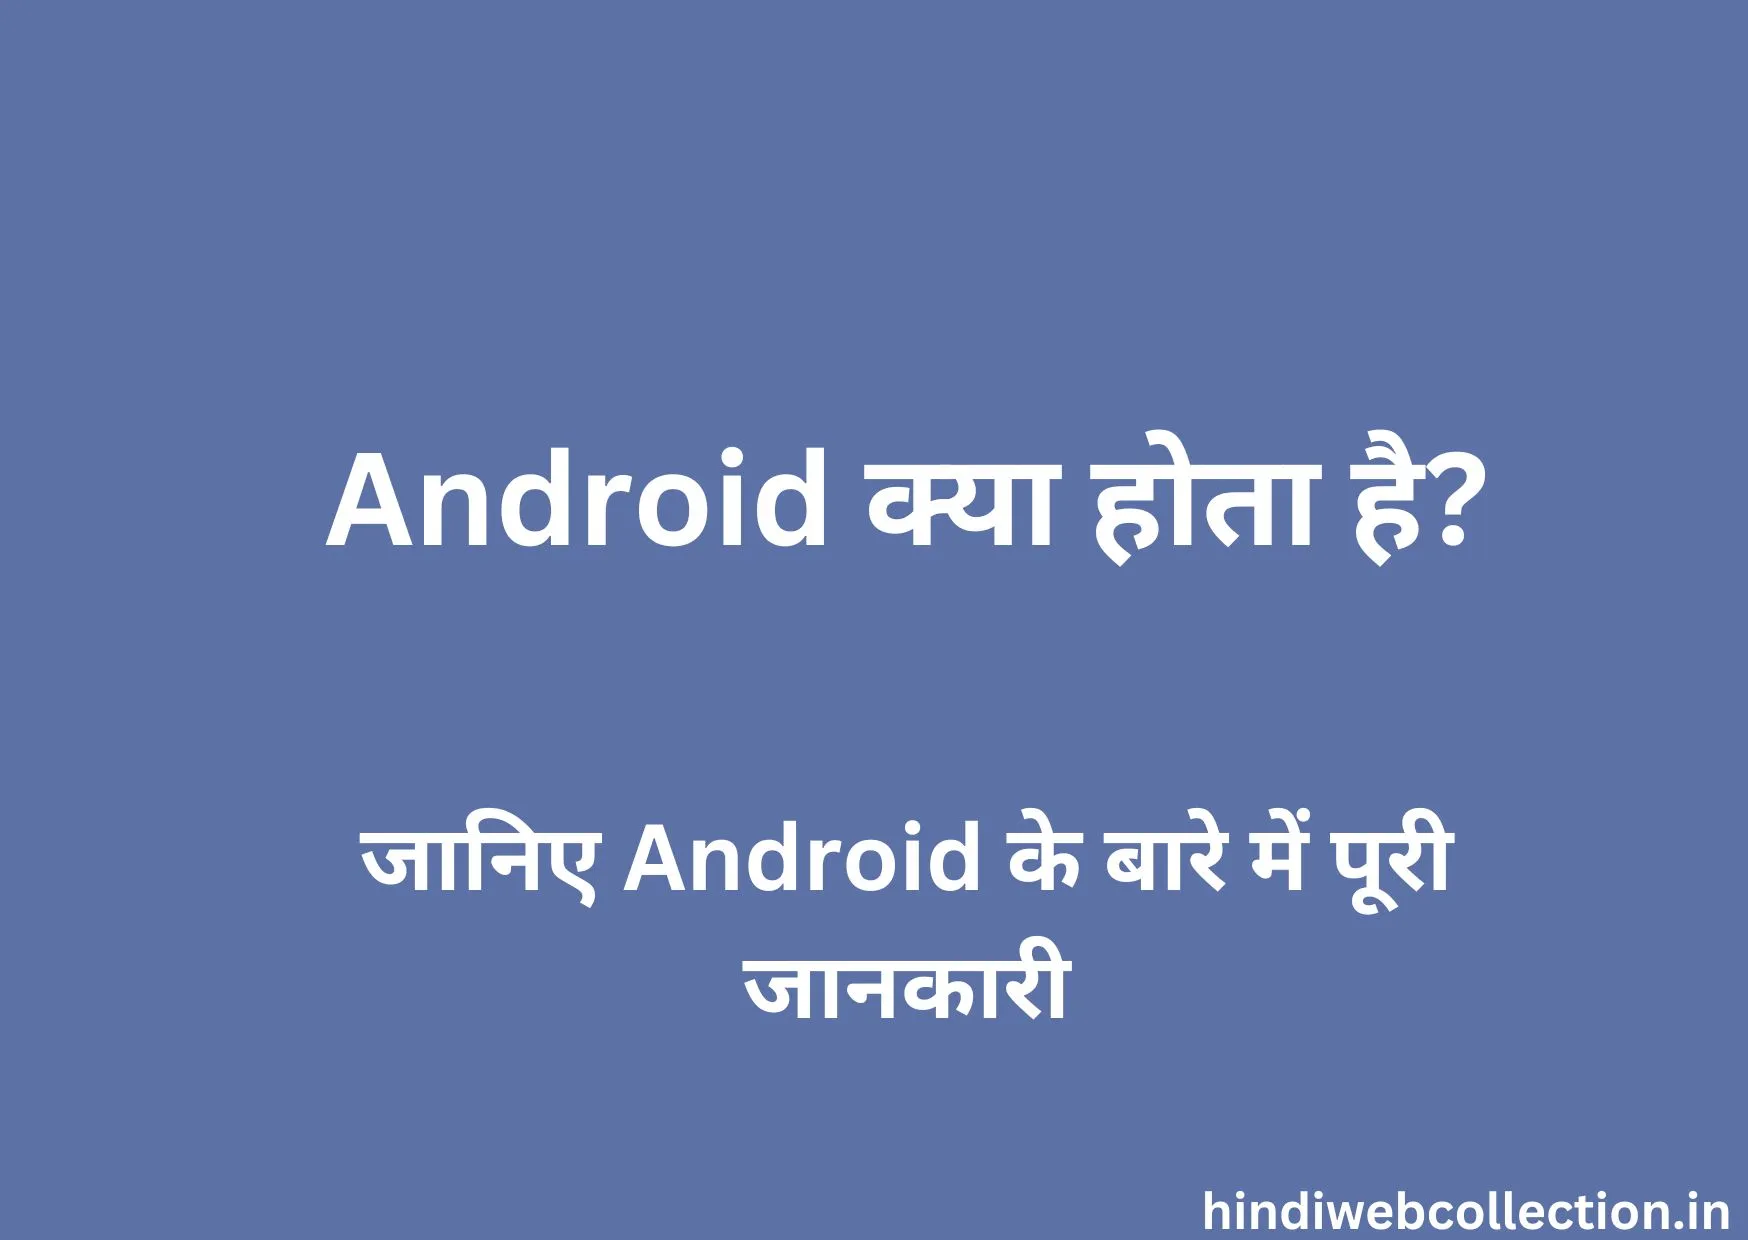 Android Kya Hota Hai